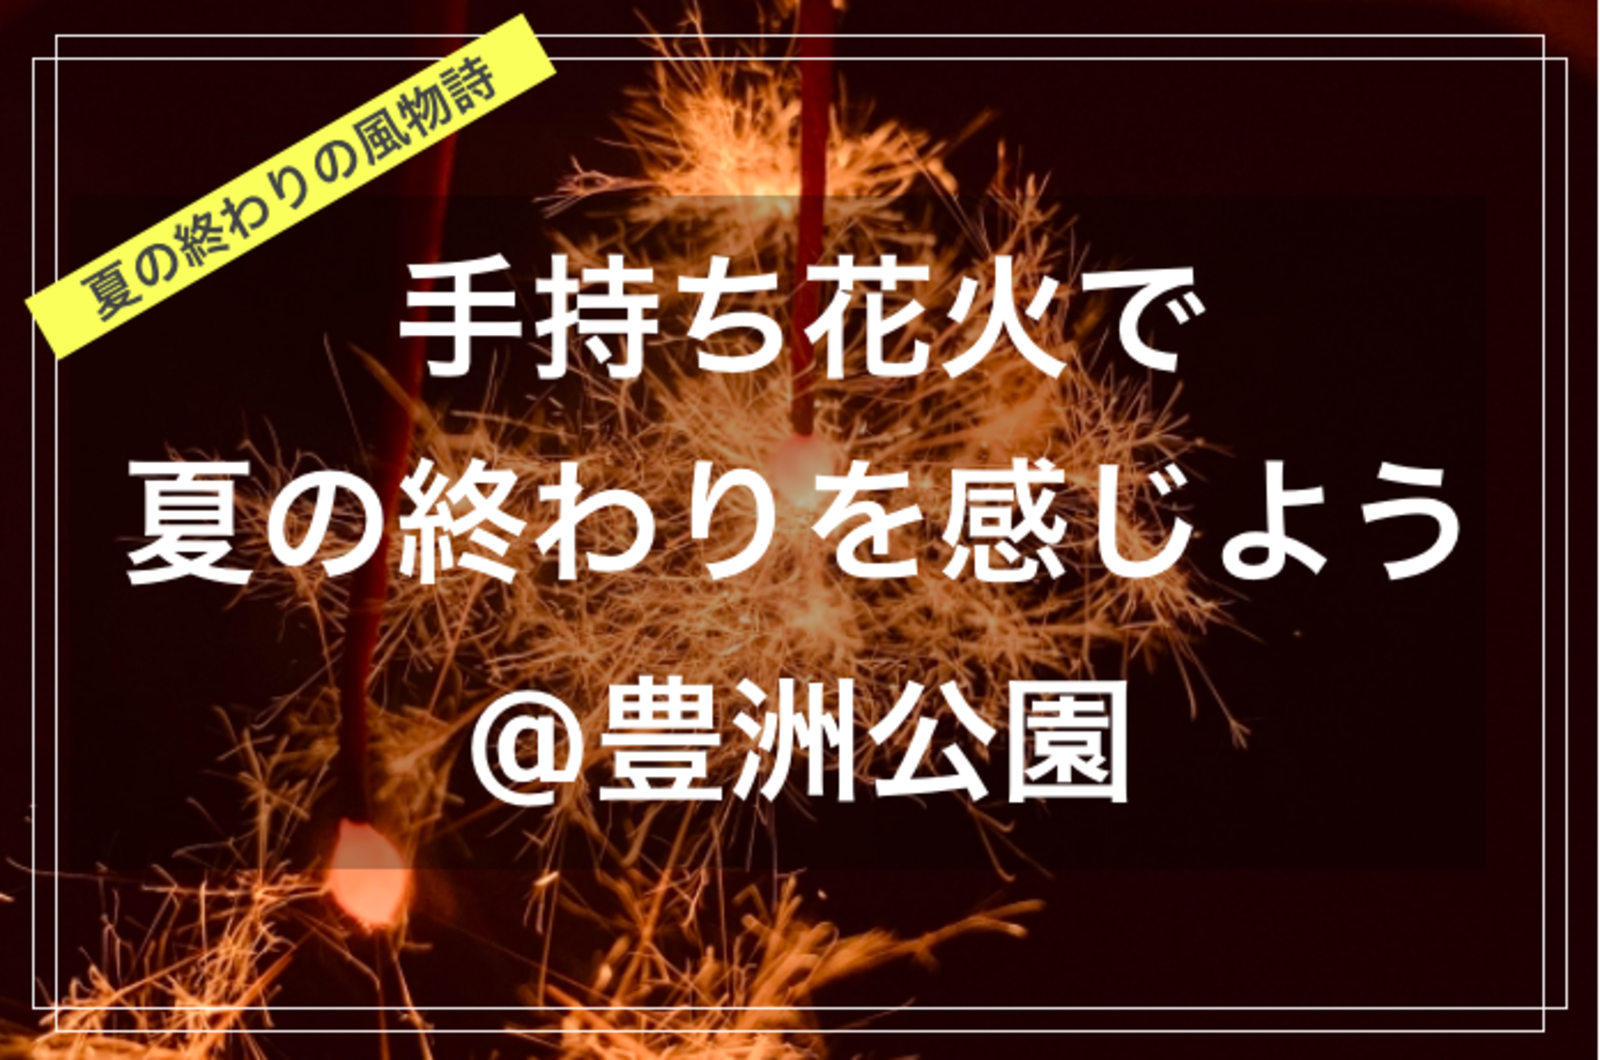 【季節を楽しむひととき@東京映えスポット✨🌃】手持ち花火で夏の終わりを感じよう🎇@豊洲公園